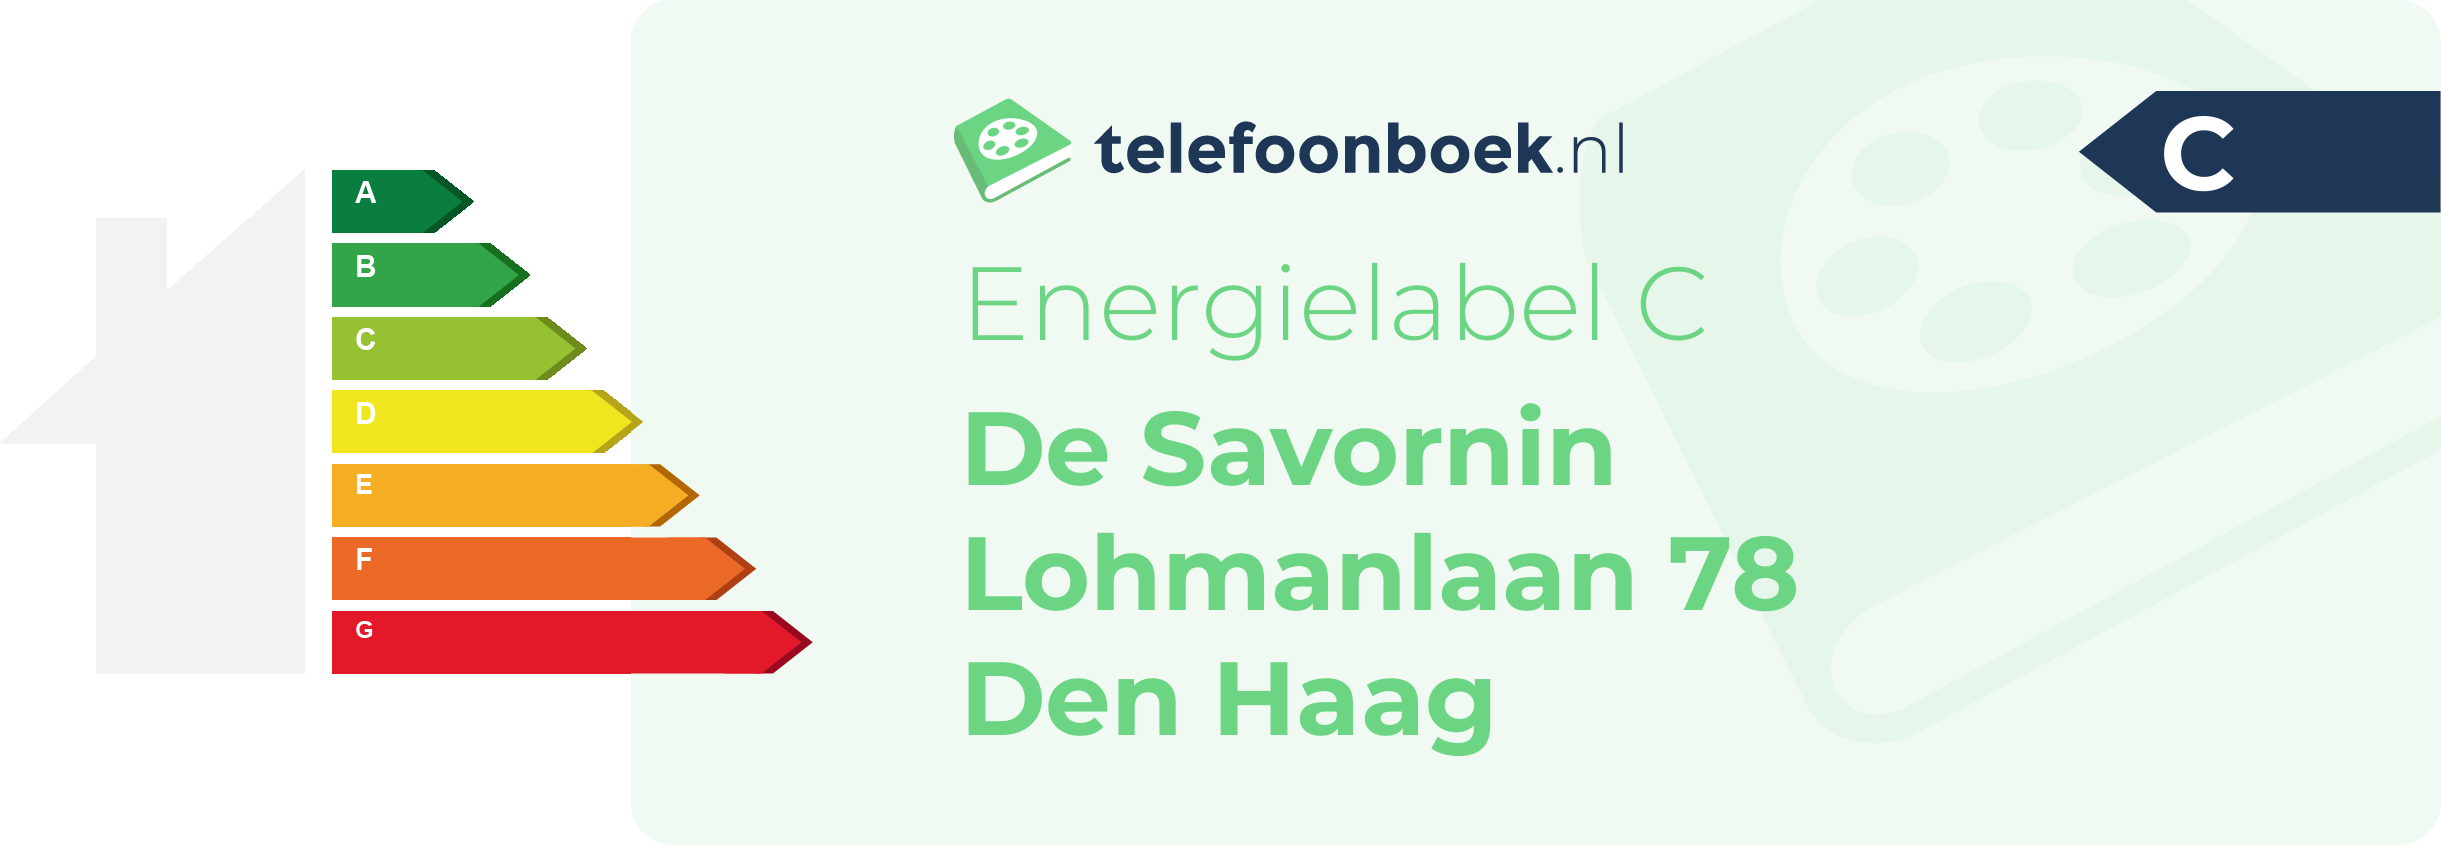 Energielabel De Savornin Lohmanlaan 78 Den Haag